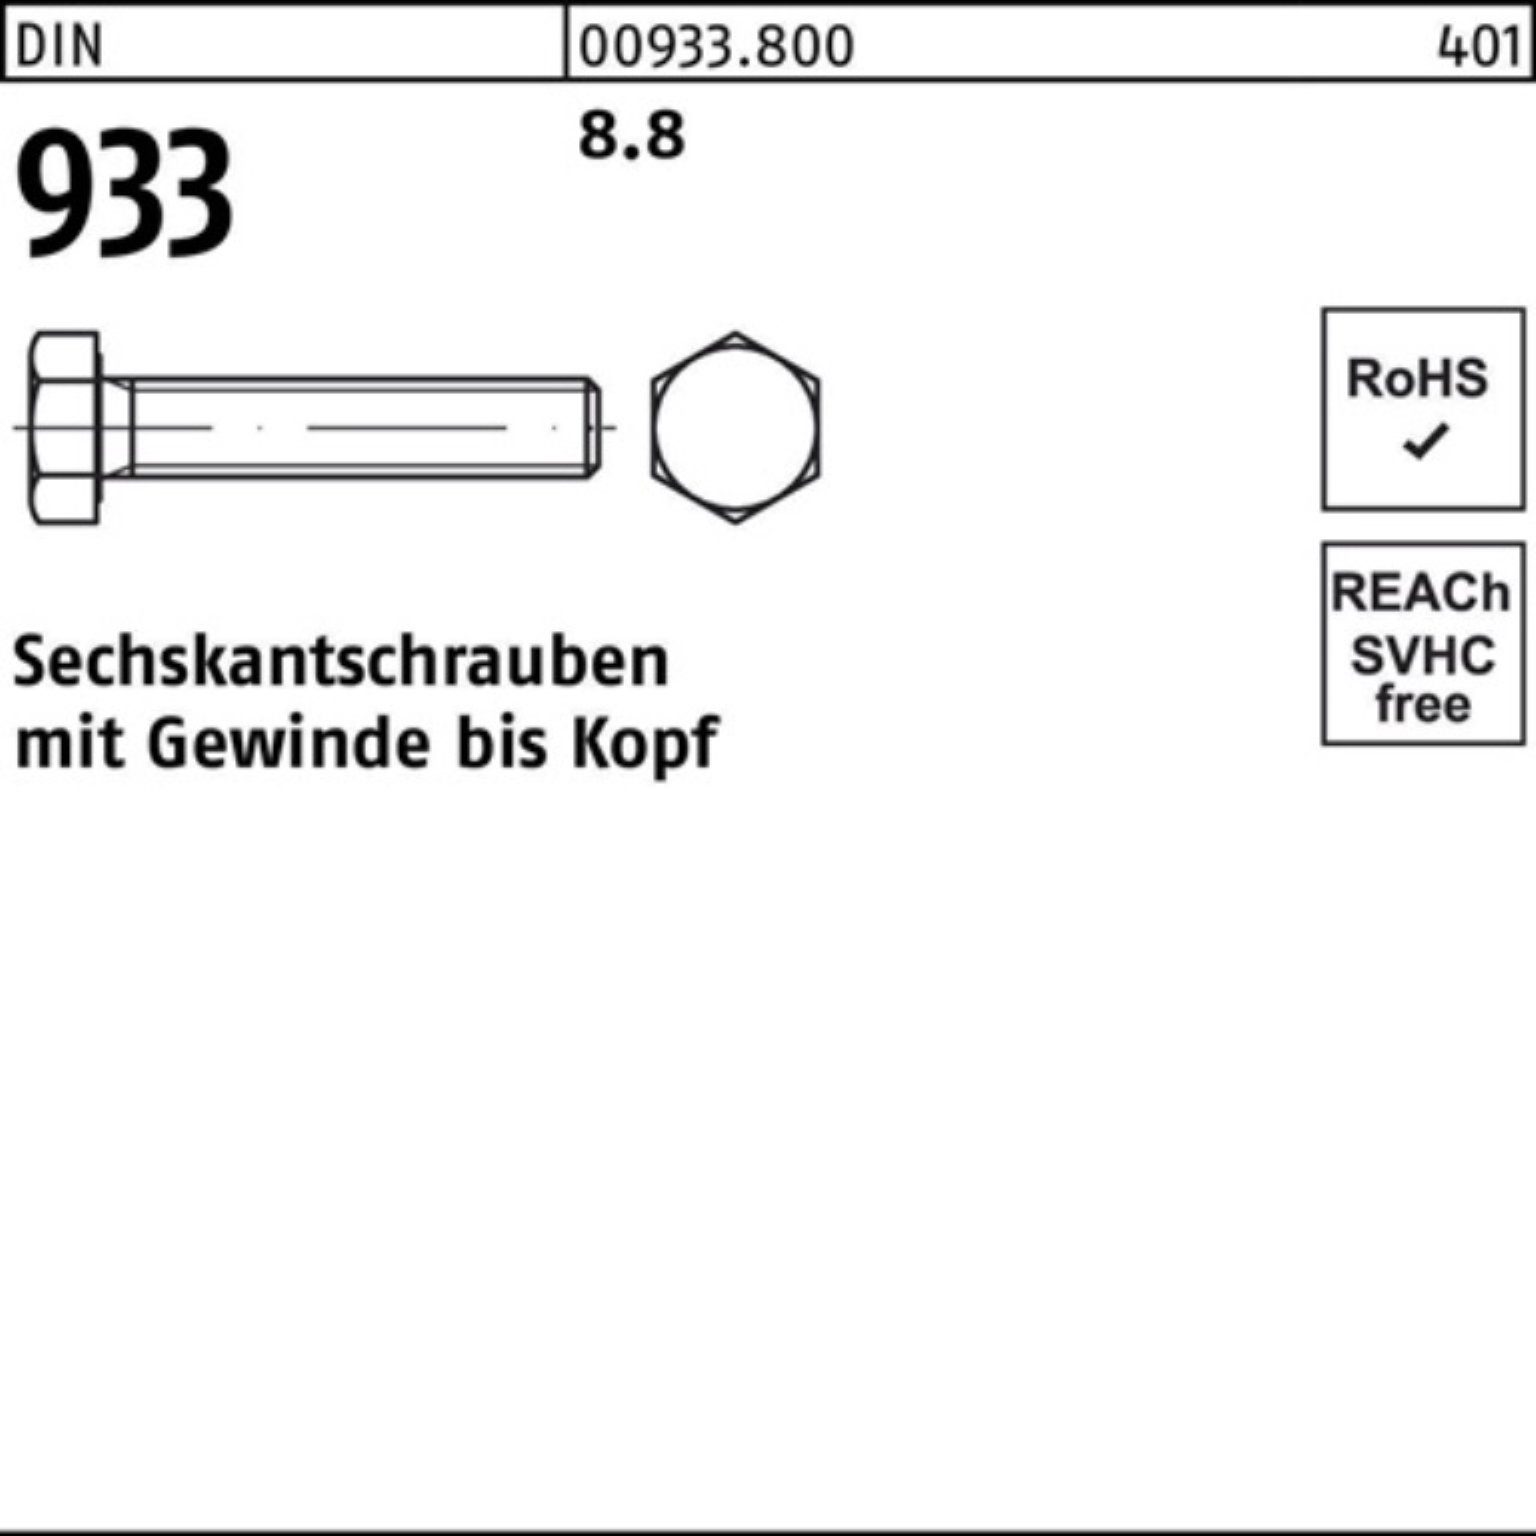 Reyher Sechskantschraube 100er Pack Sechskantschraube 933 DIN DIN VG M39x 933 1 8.8 100 Stück